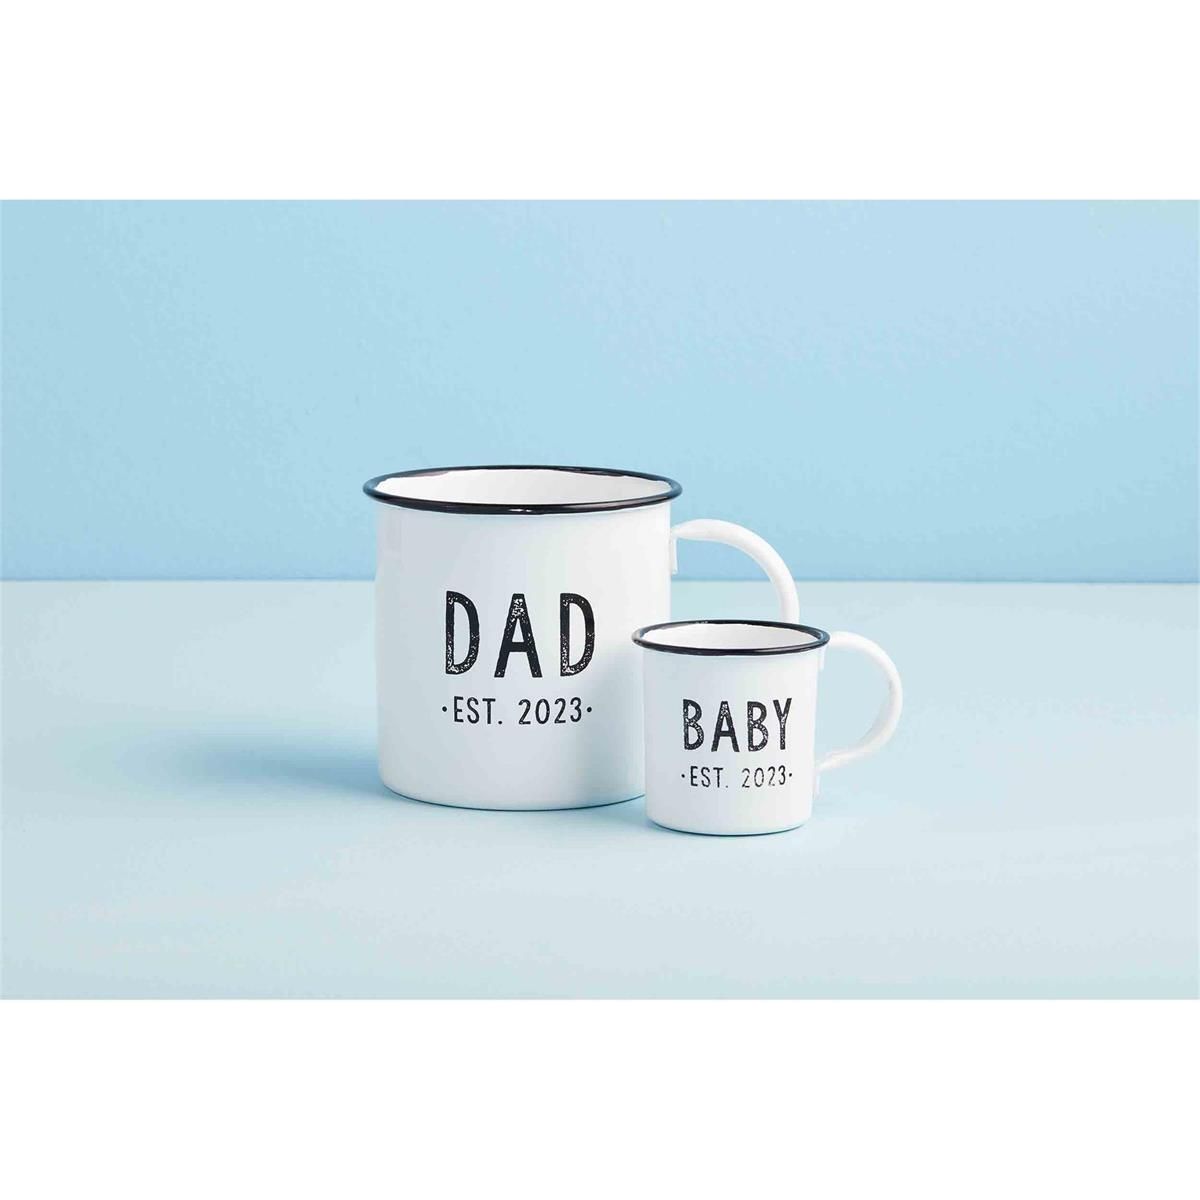 Dad & Baby Est. 2023 Mug Set